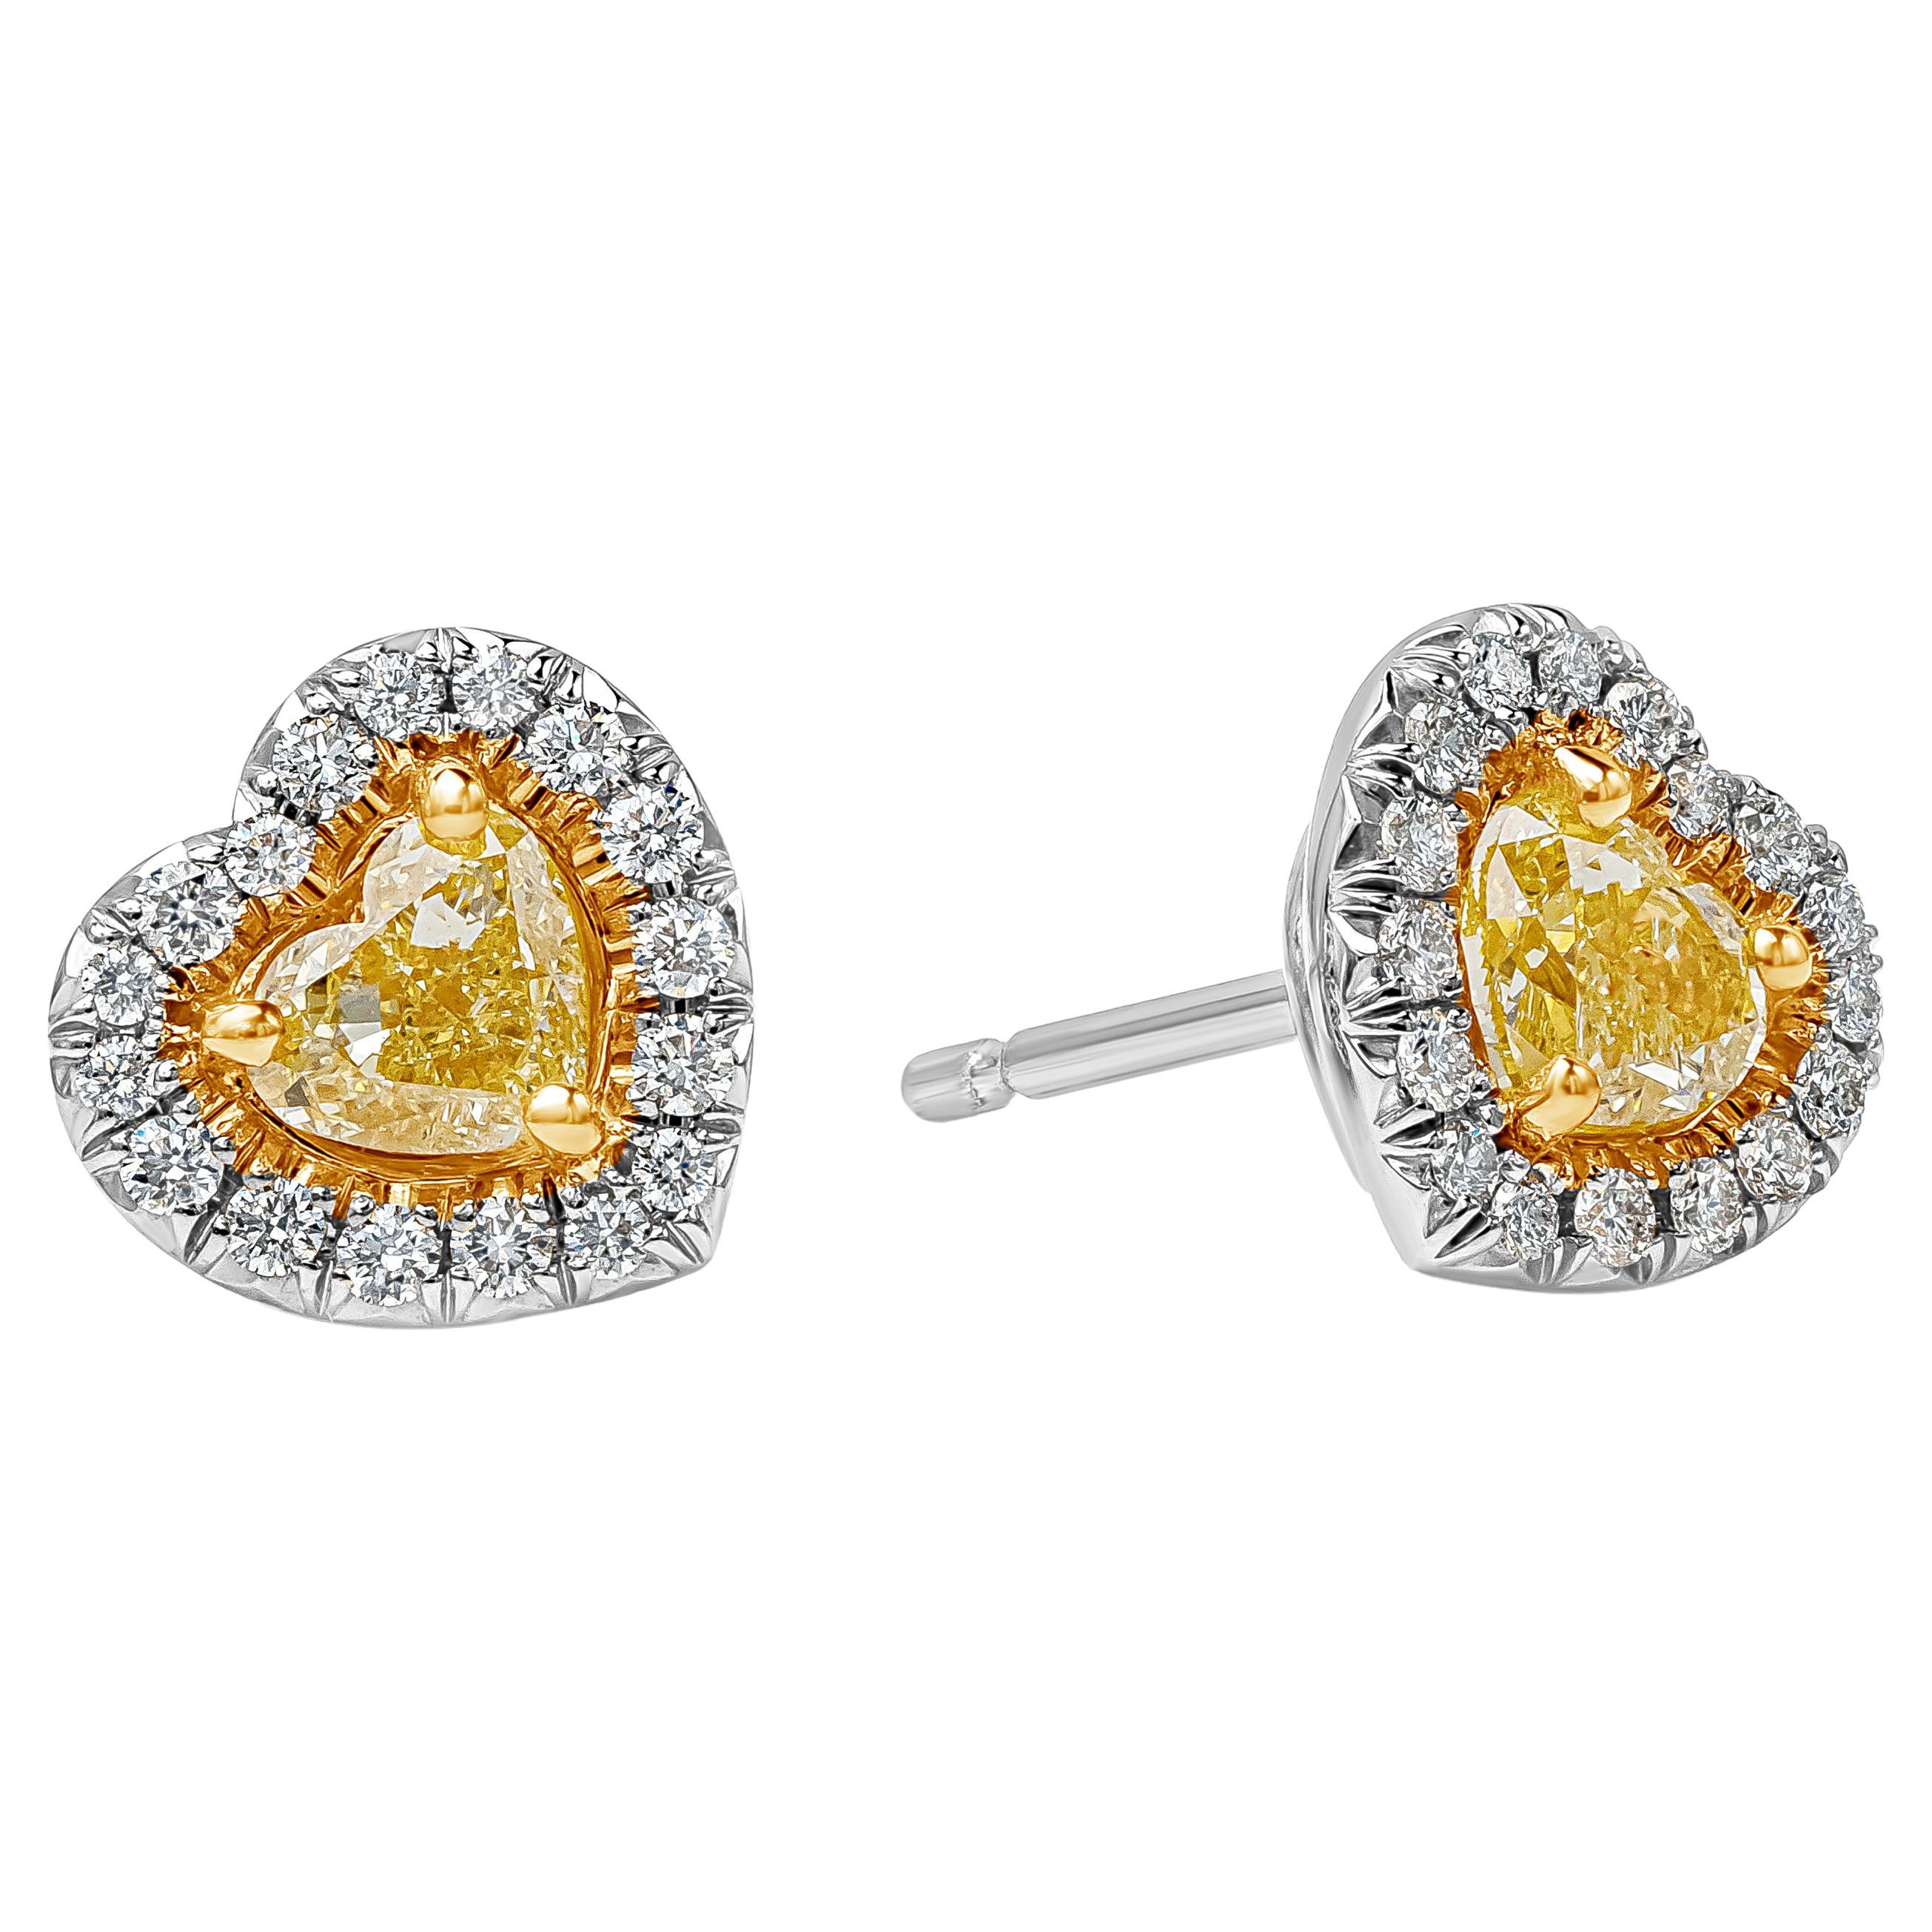 Roman Malakov 0.69 Carats Total Heart Shape Fancy Yellow Diamond Stud Earrings For Sale